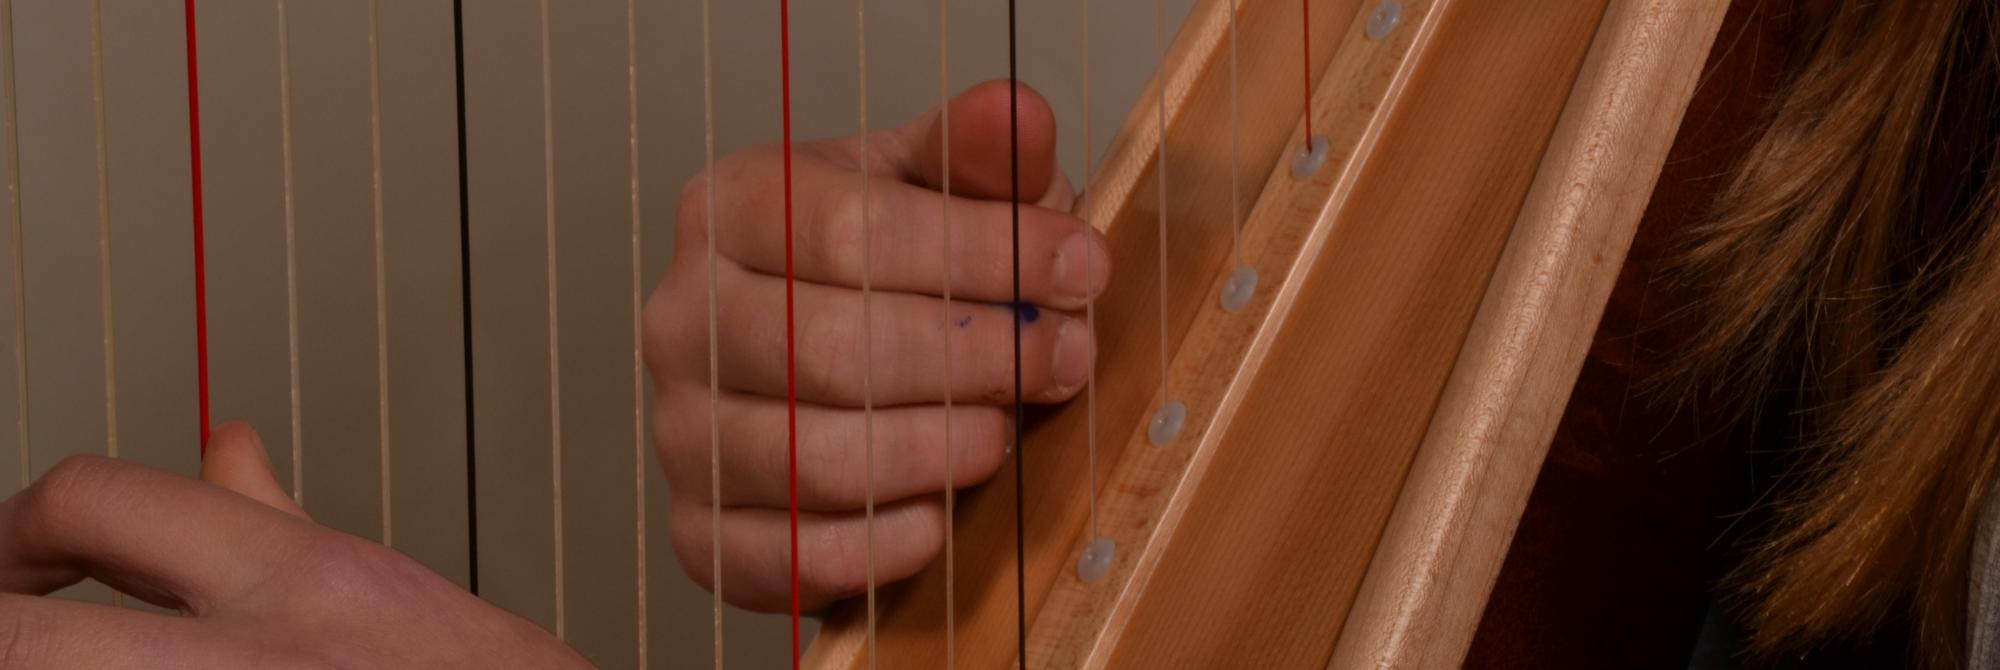 Detail van leerling die harp speelt